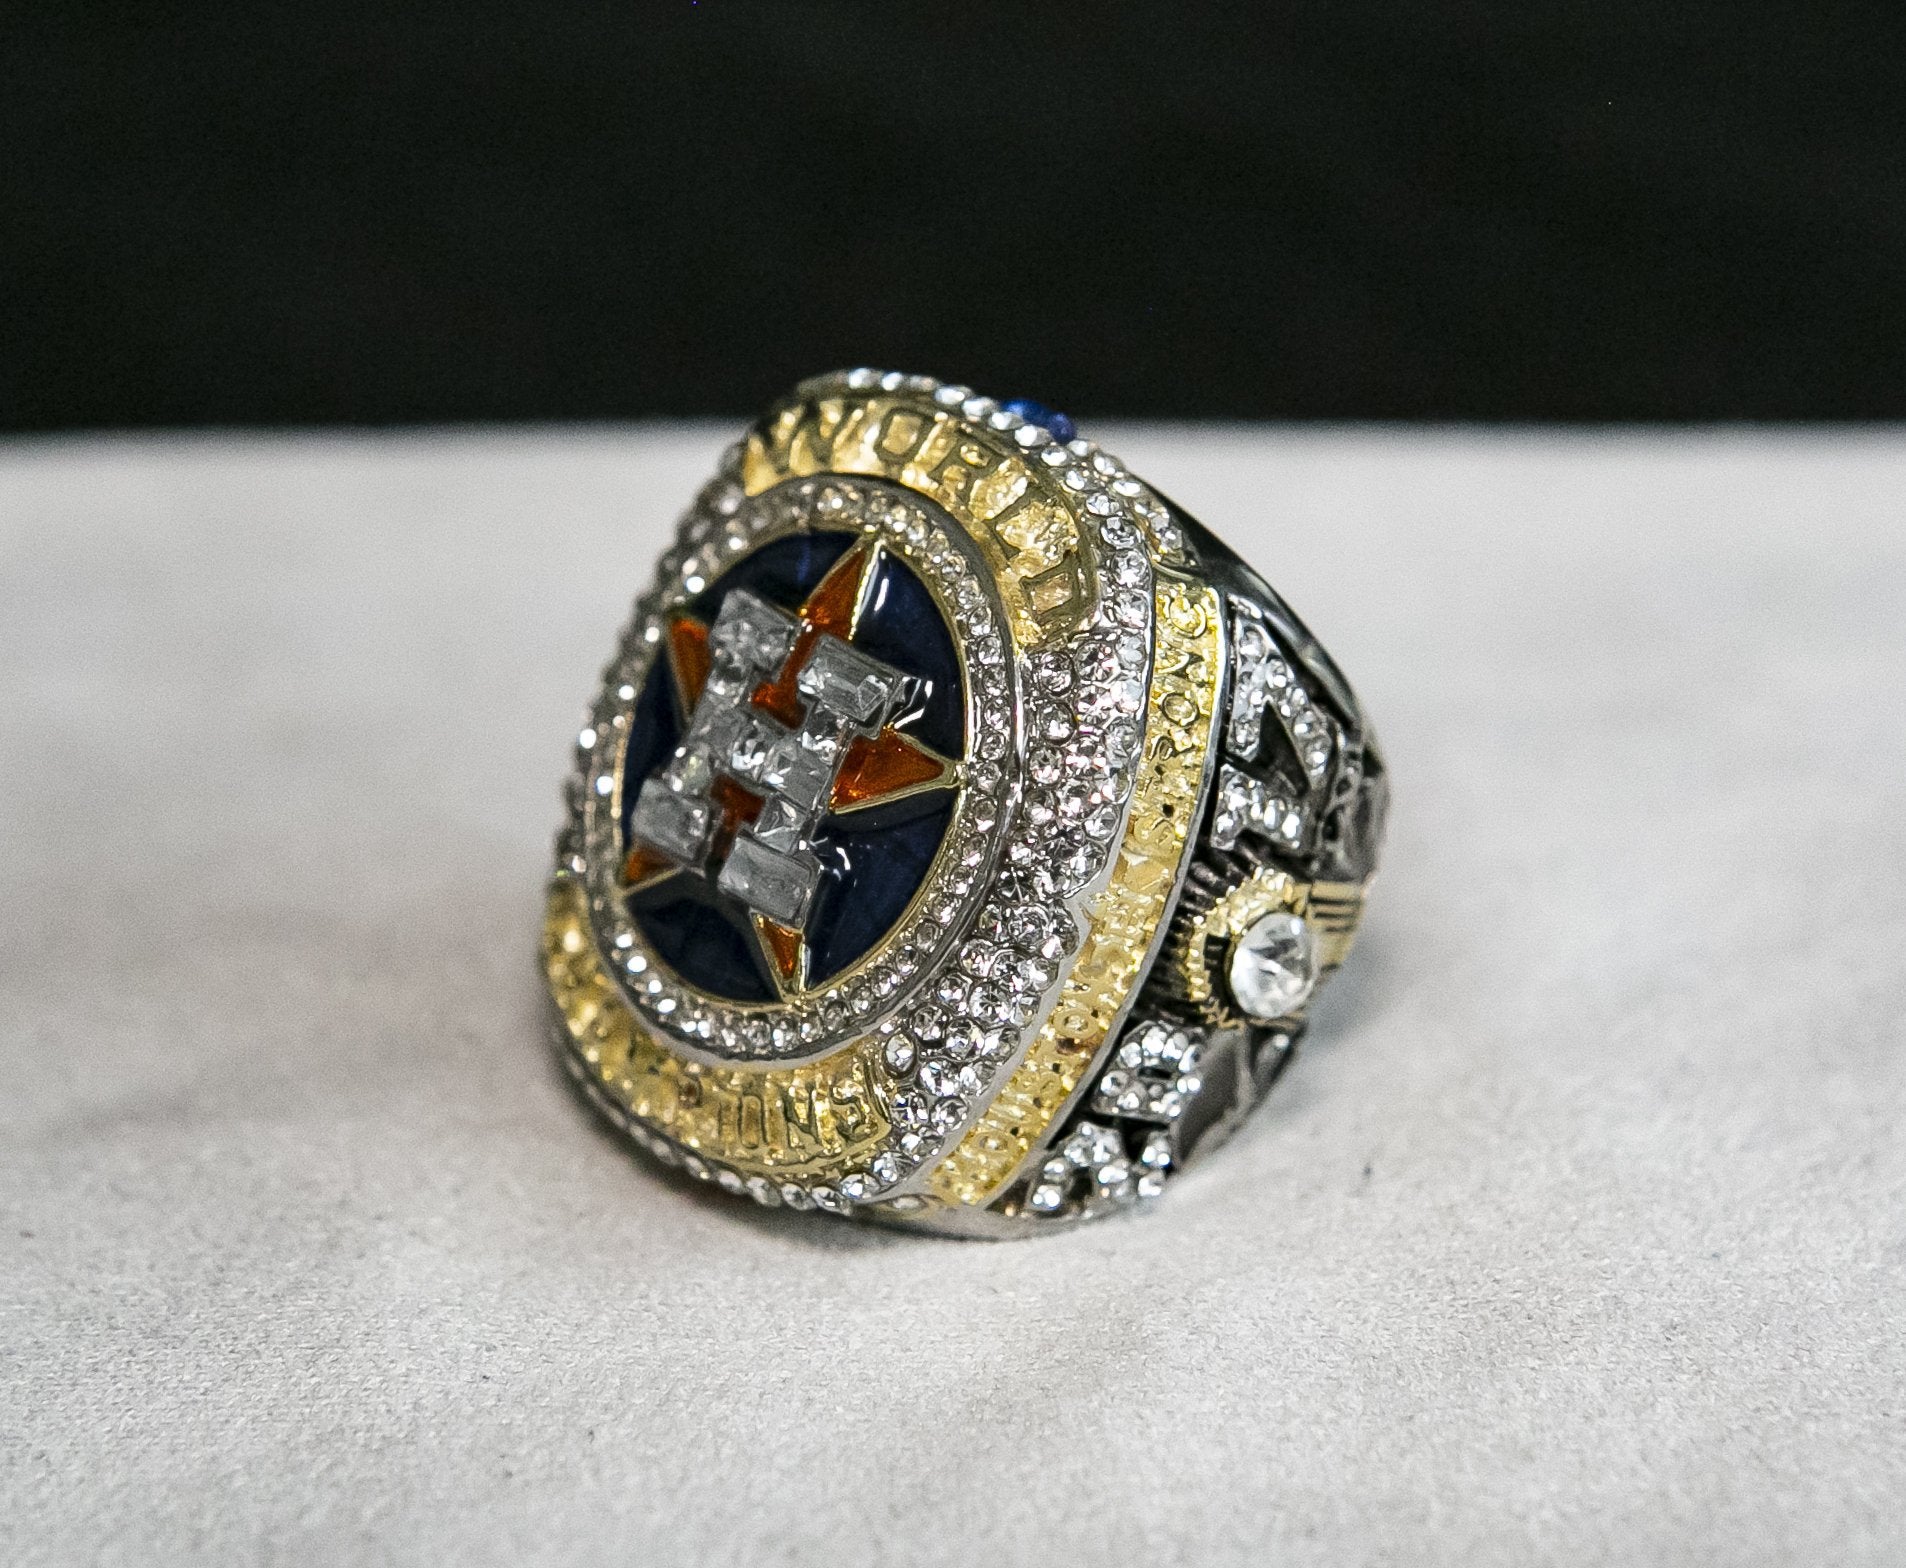 Houston Astros World Series Ring (2017) - Rings For Champs, NFL rings, MLB rings, NBA rings, NHL rings, NCAA rings, Super bowl ring, Superbowl ring, Super bowl rings, Superbowl rings, Dallas Cowboys